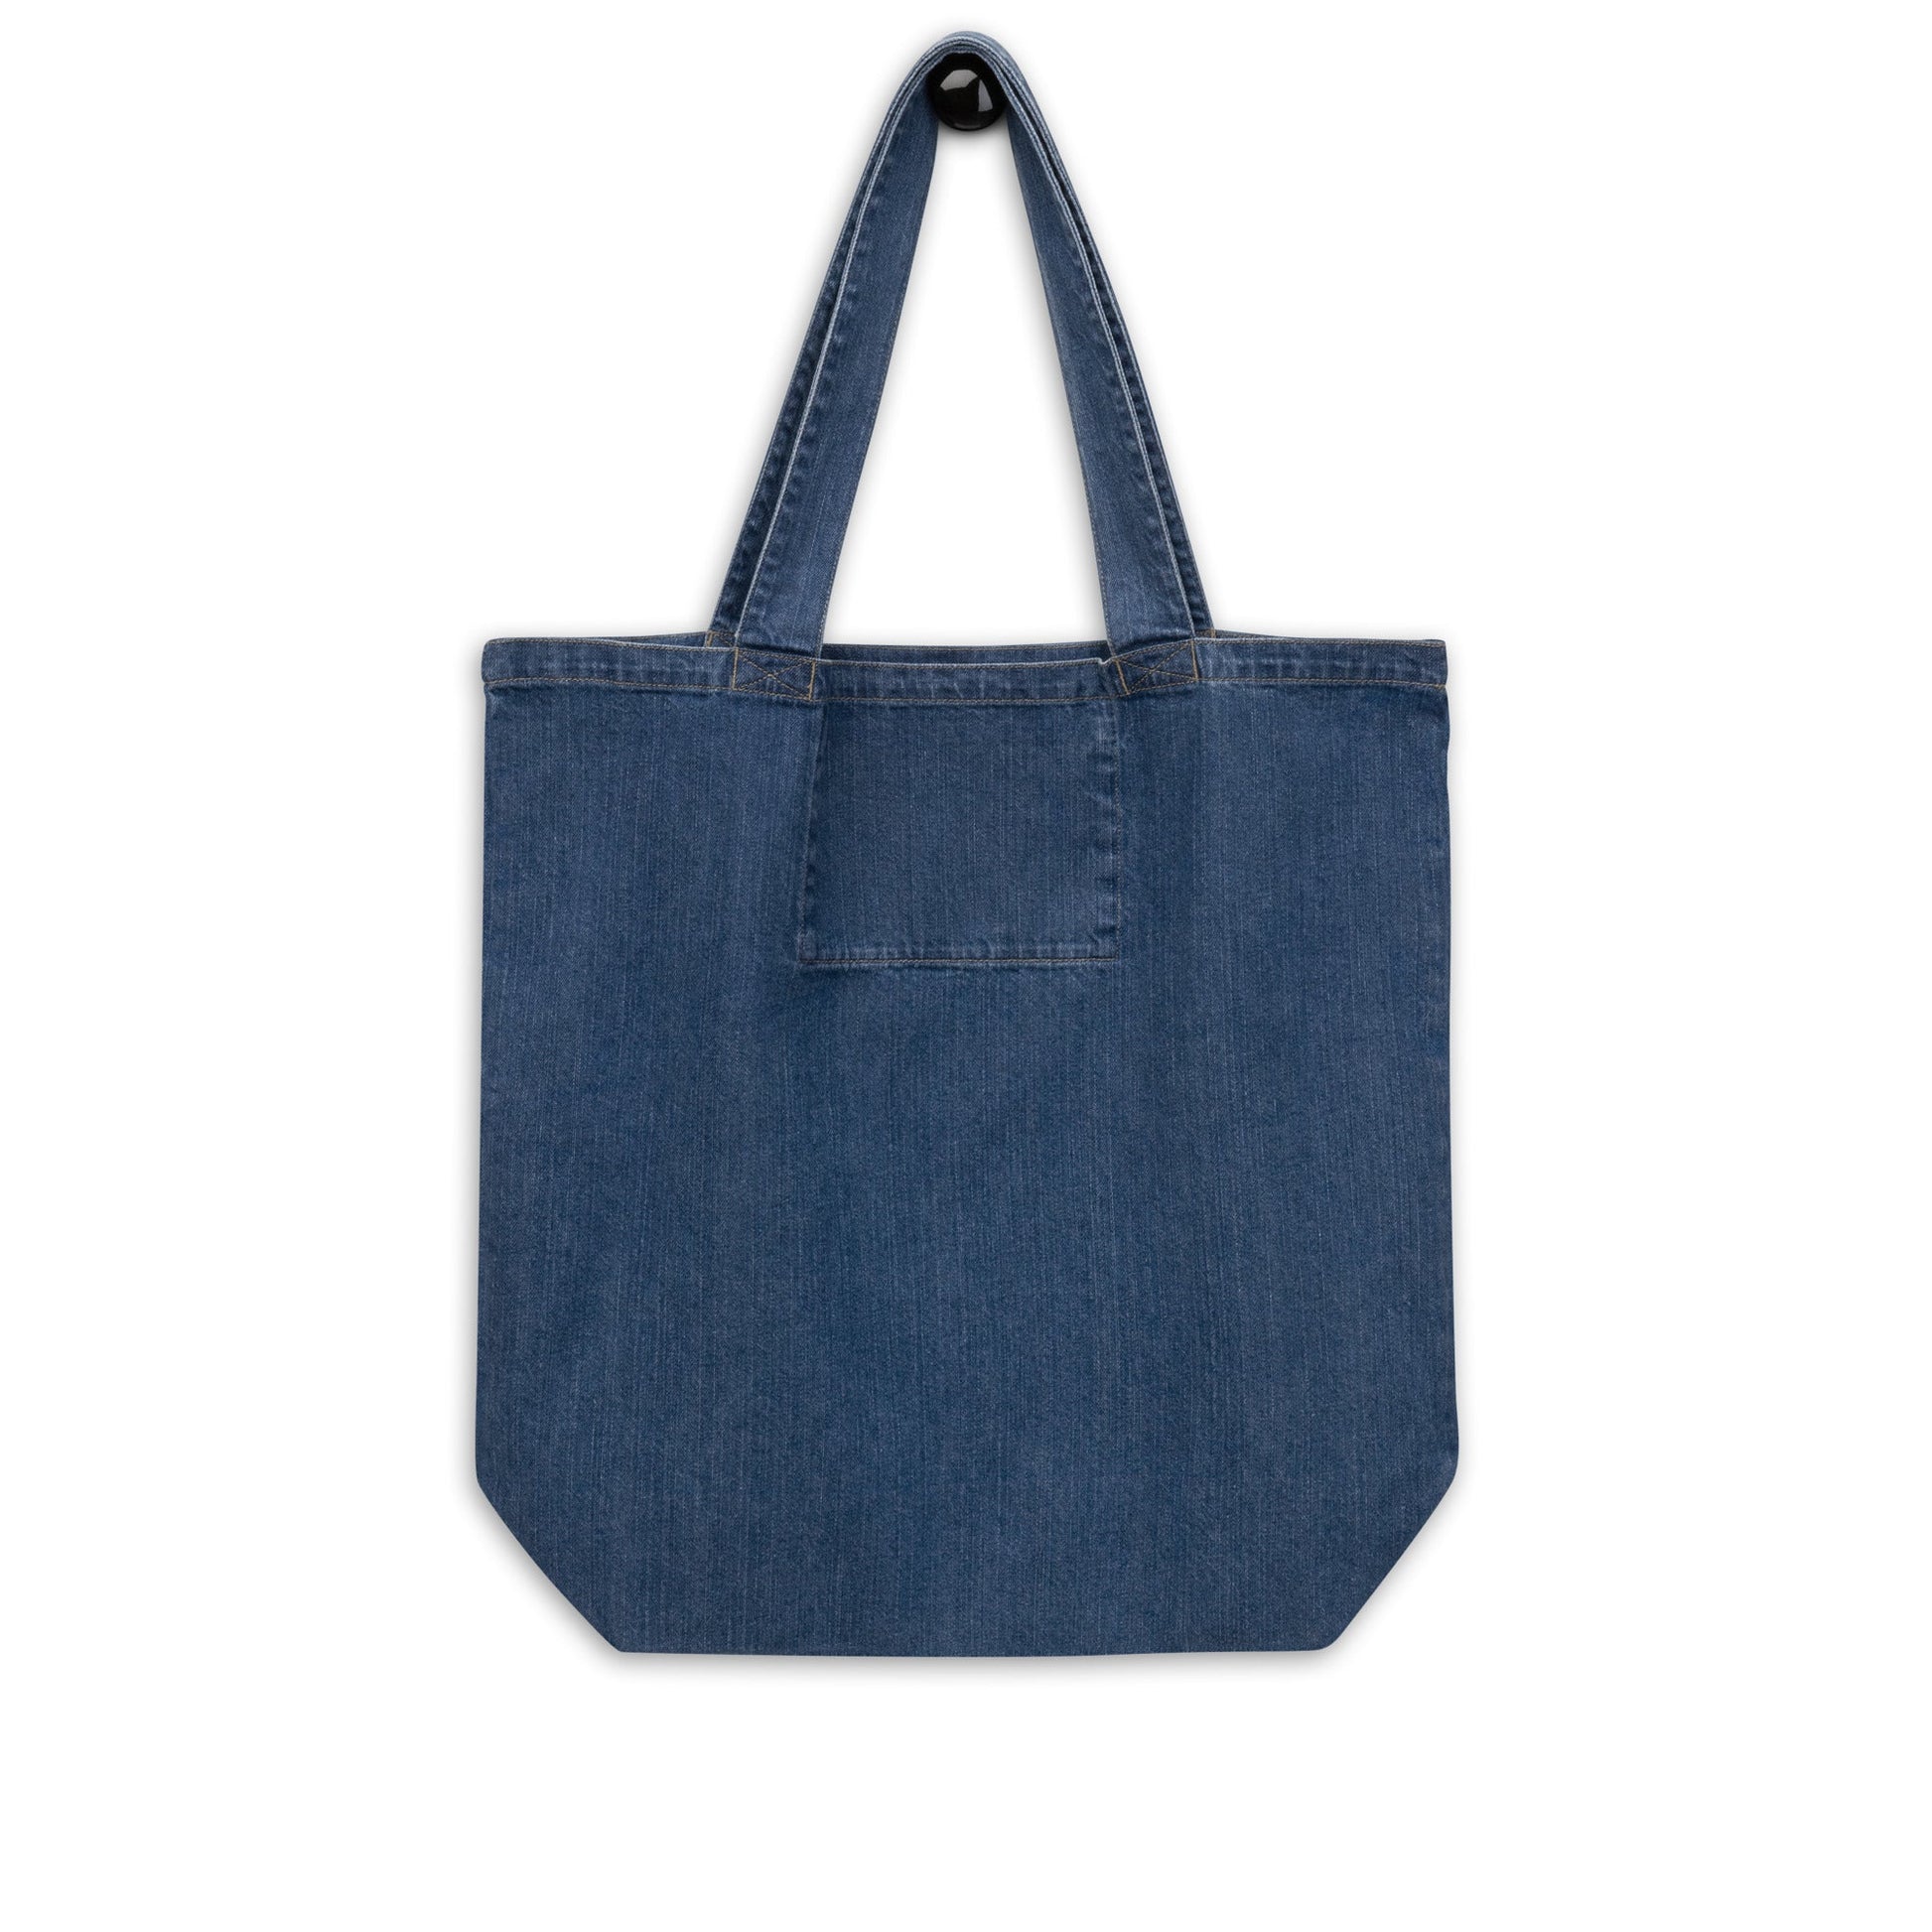 Leech Animal Spirit Tote Bag 100% Organic blue denim